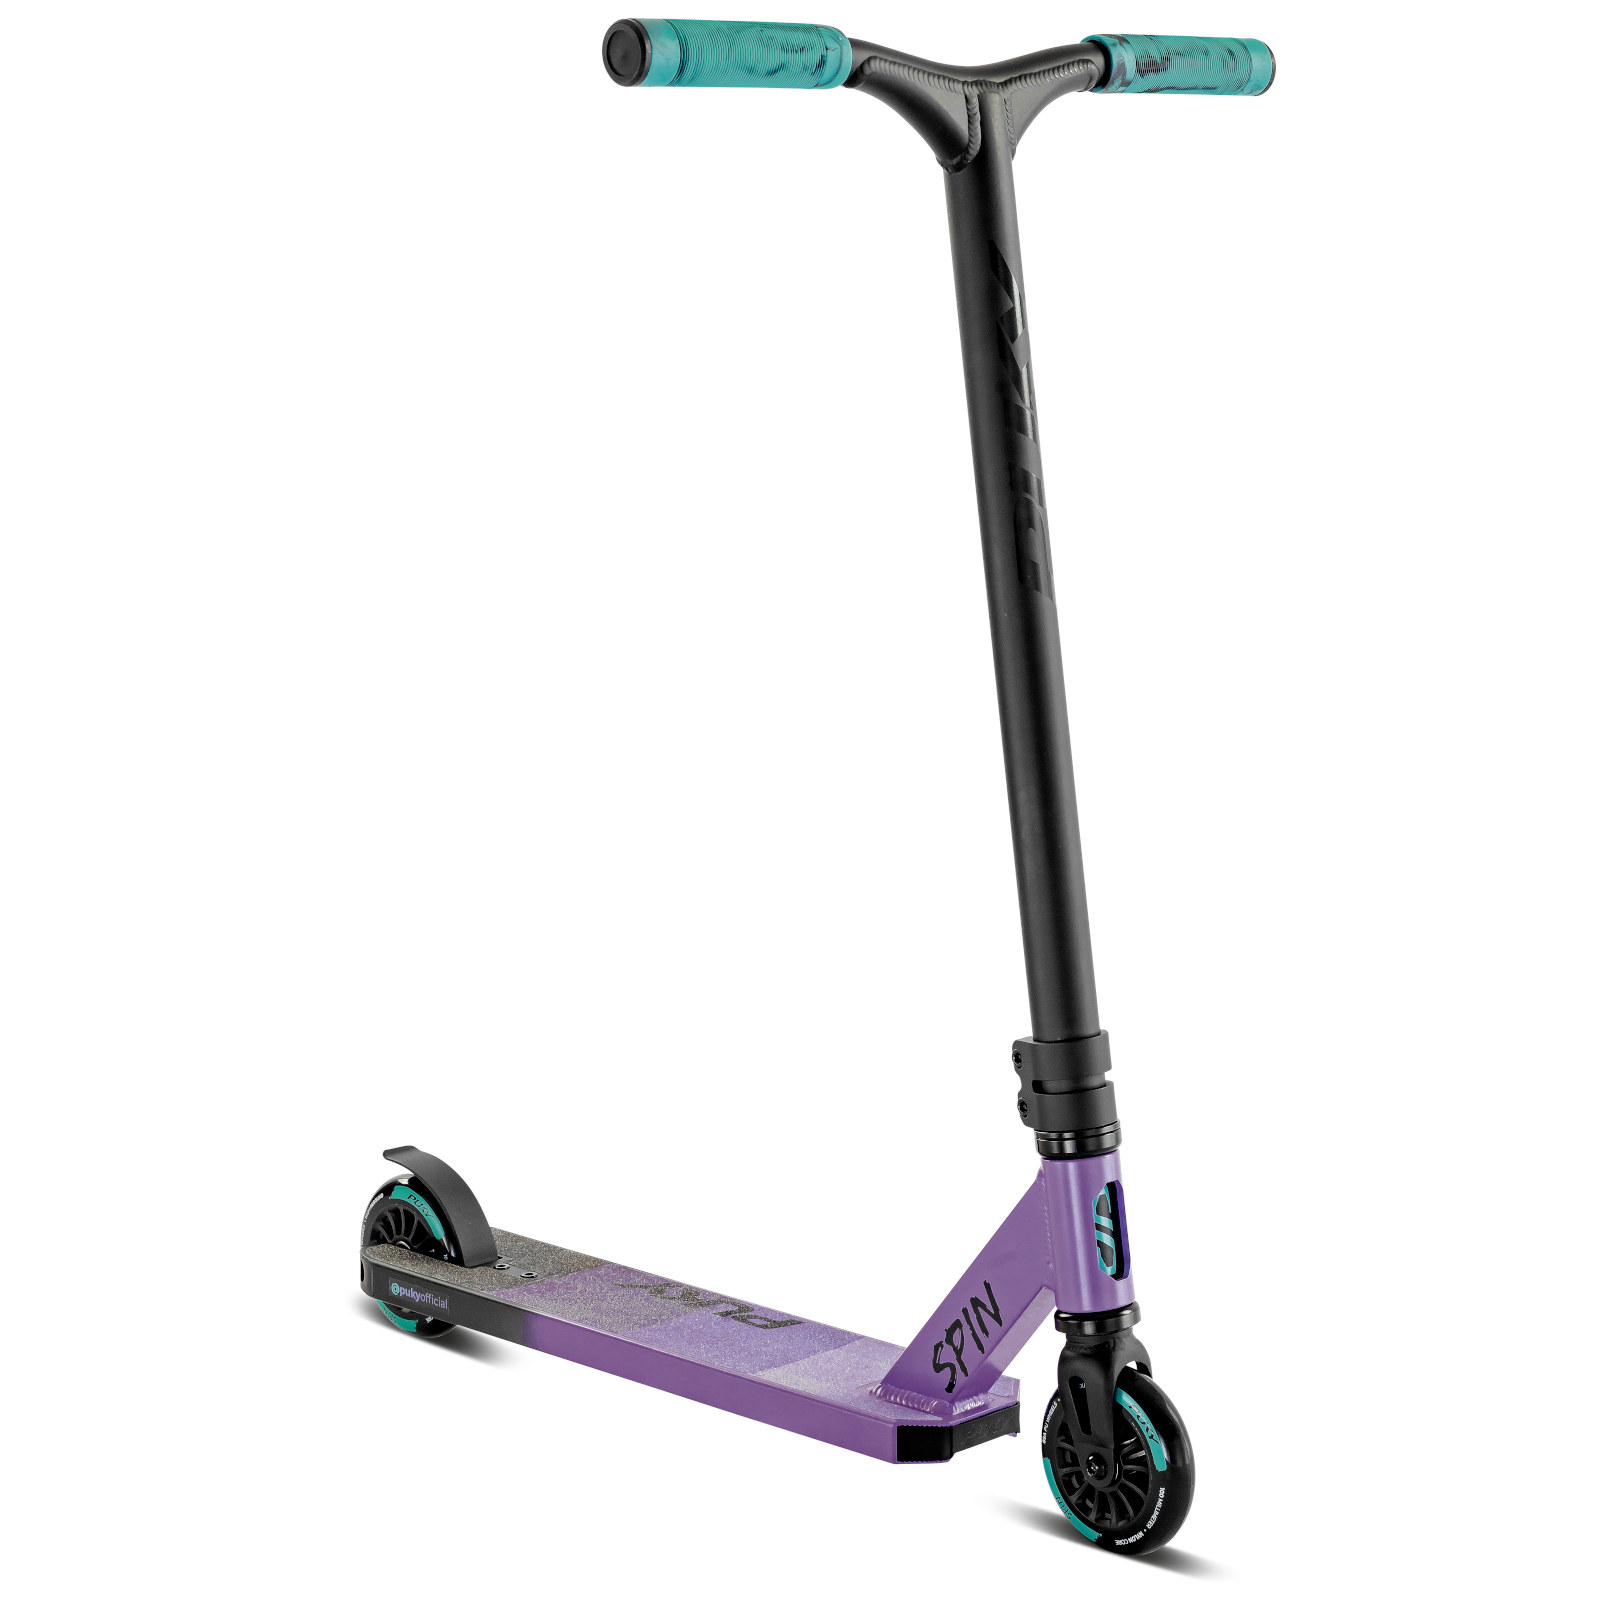 Produktbild von Puky SPIN Kinderroller - chilled purple